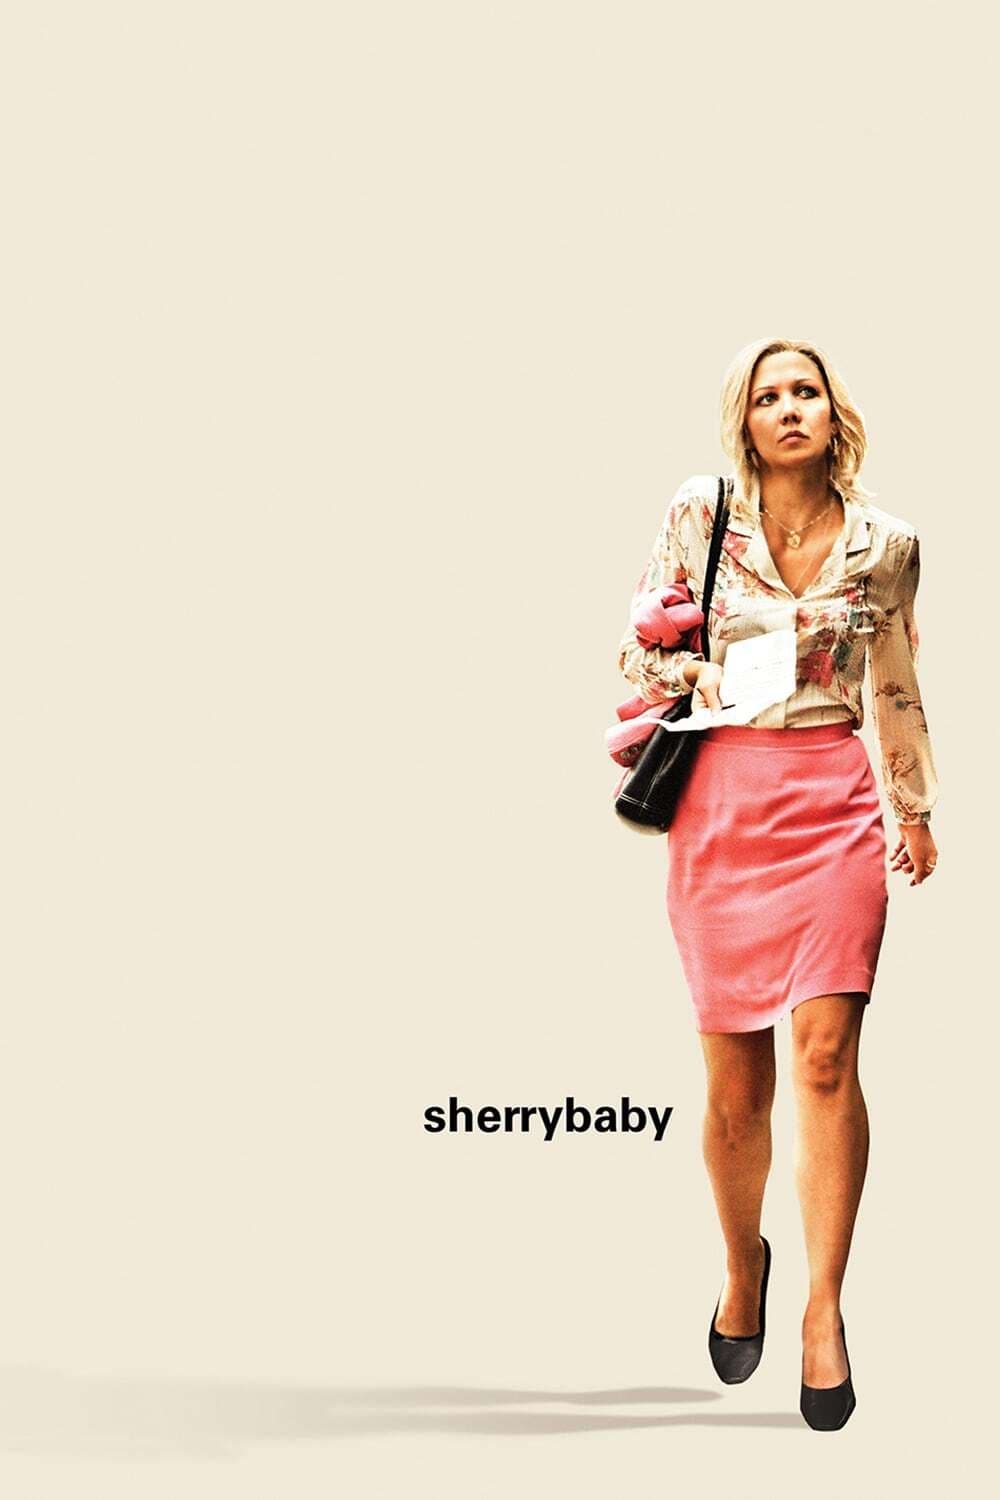 Sherrybaby est-il disponible sur Netflix ou autre ?